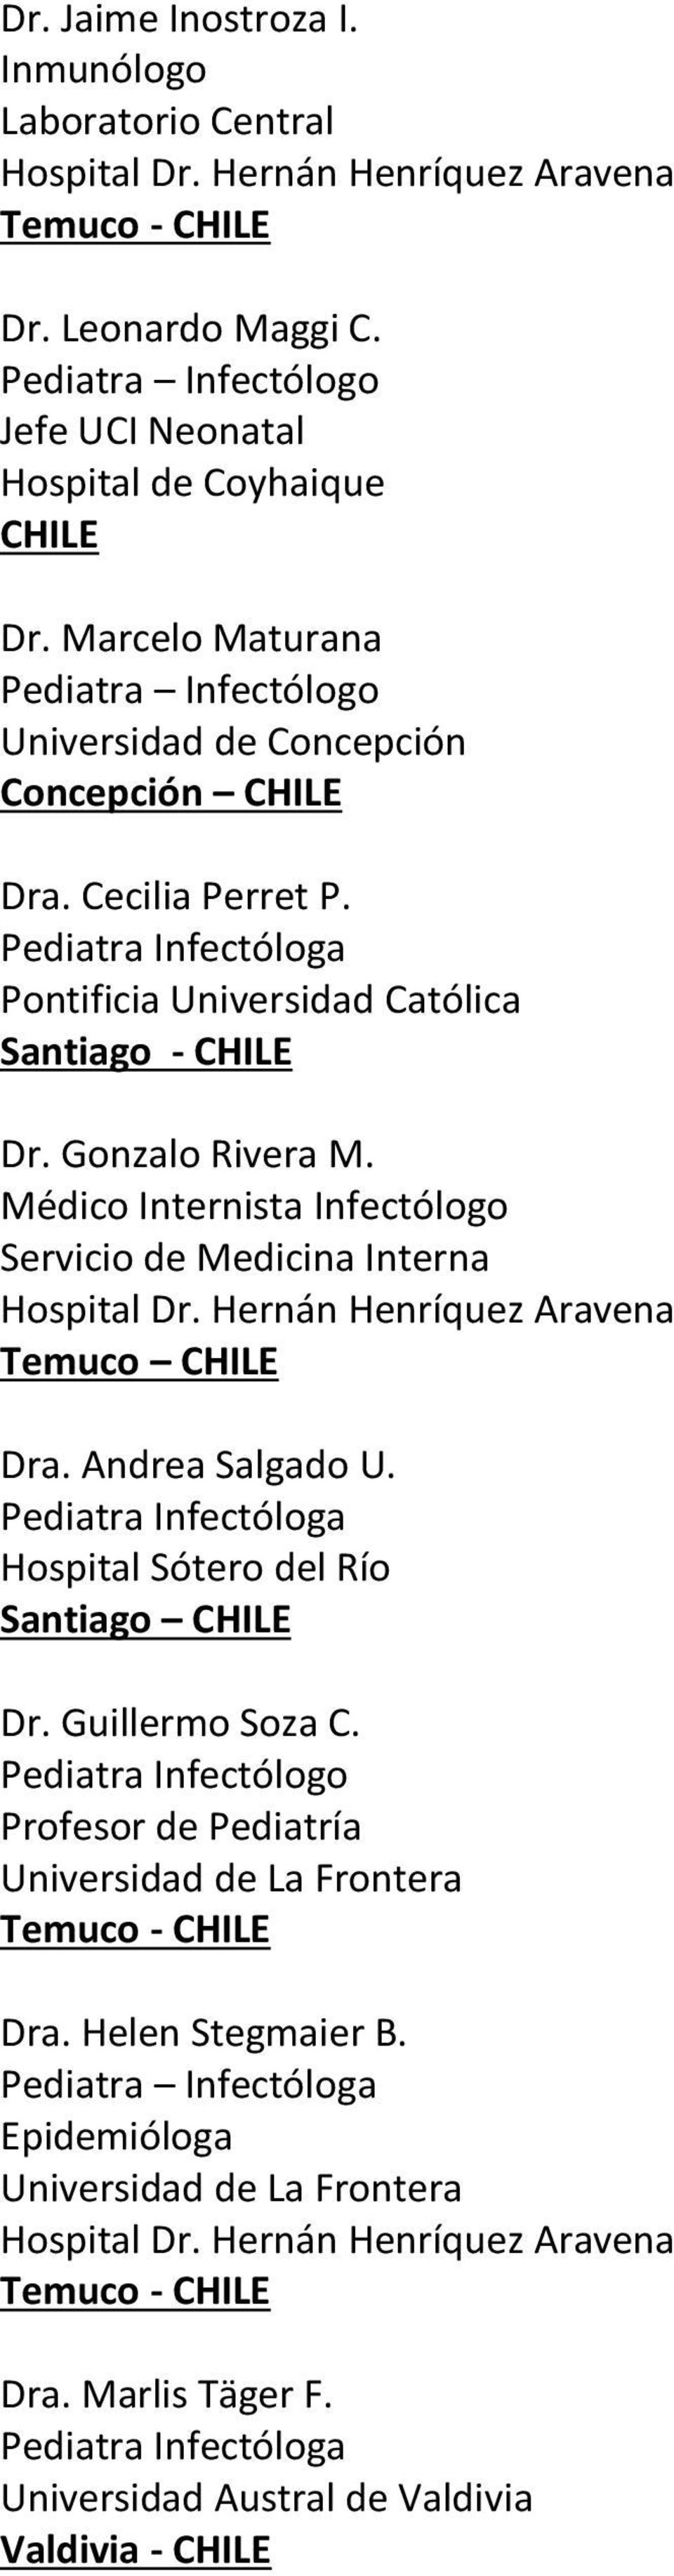 Médico Internista Infectólogo Servicio de Medicina Interna Temuco CHILE Dra. Andrea Salgado U. Hospital Sótero del Río Santiago CHILE Dr. Guillermo Soza C.